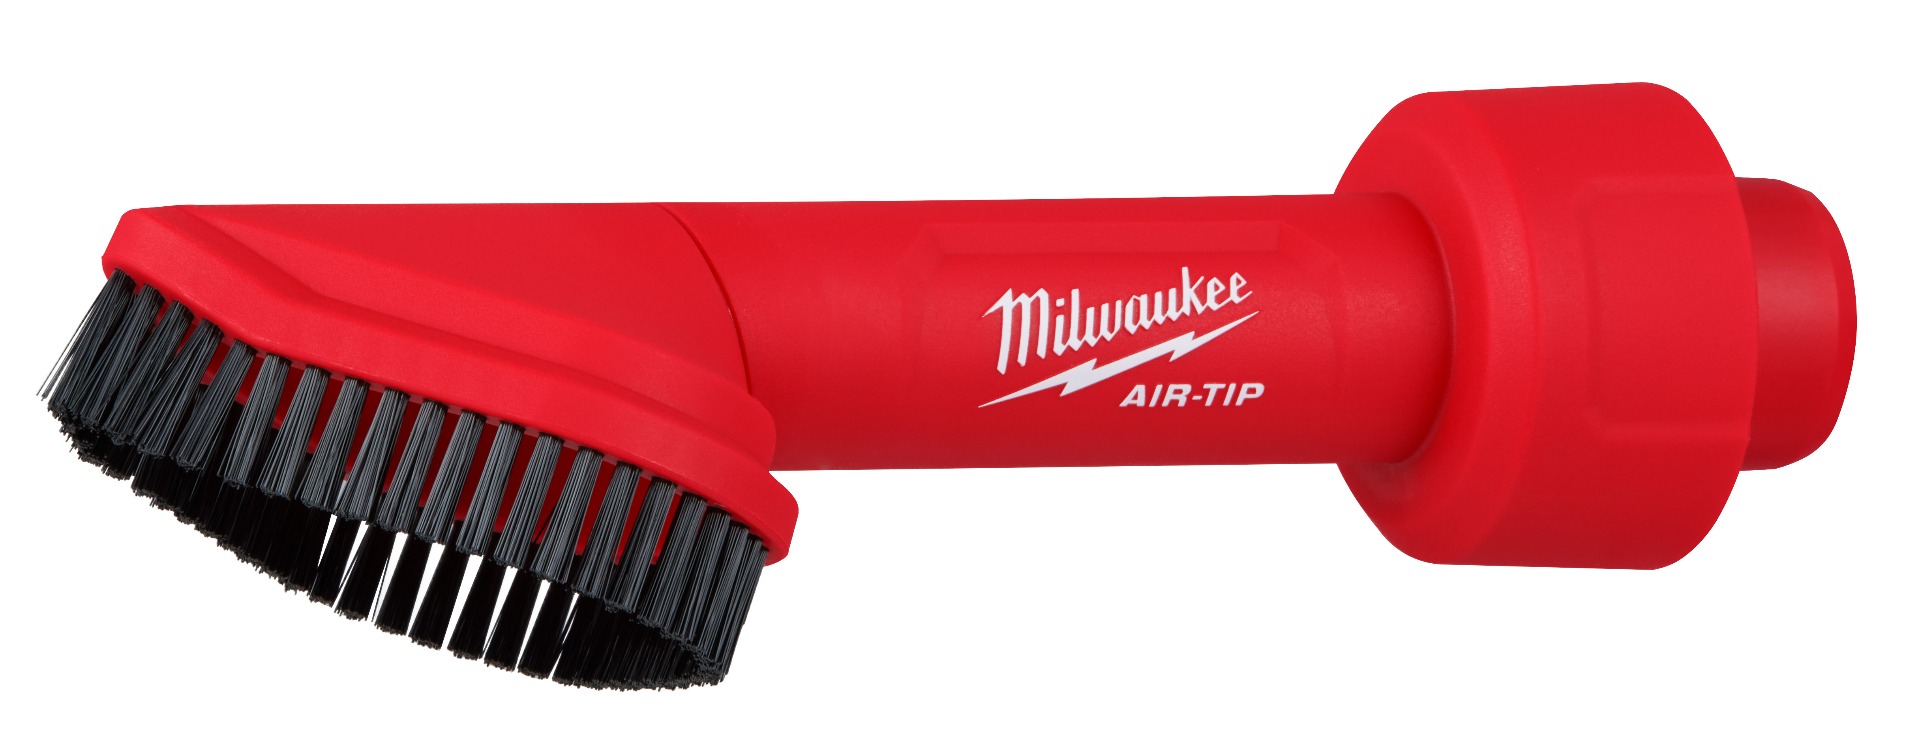 AIR-TIP Rotating Corner Brush Tool